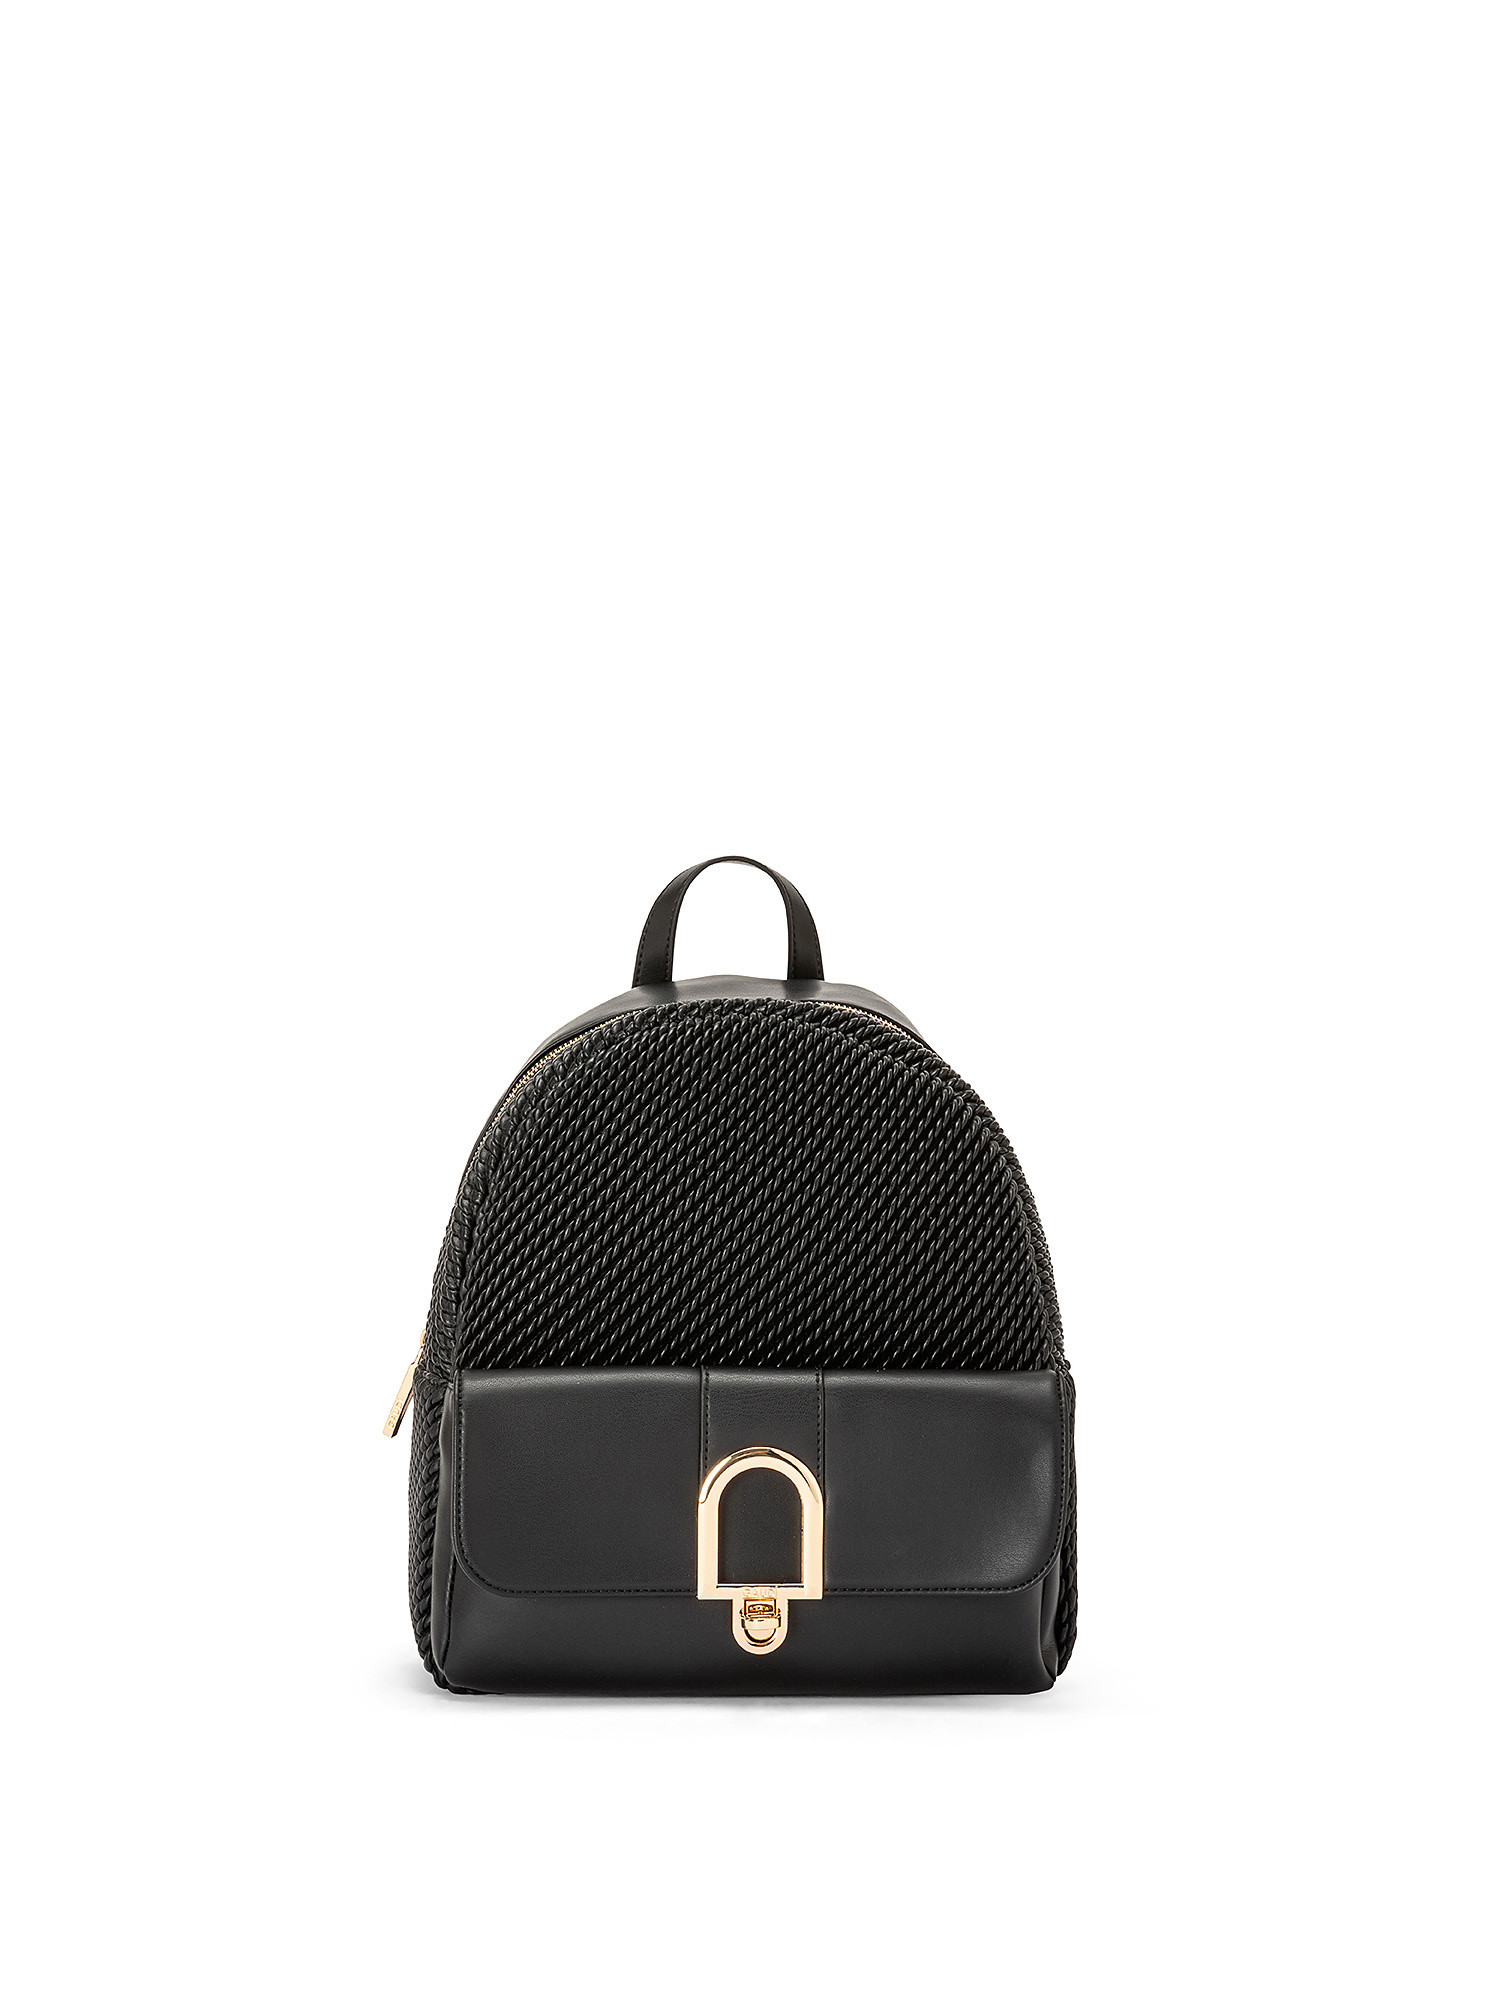 Thalissa backpack, Black, large image number 0